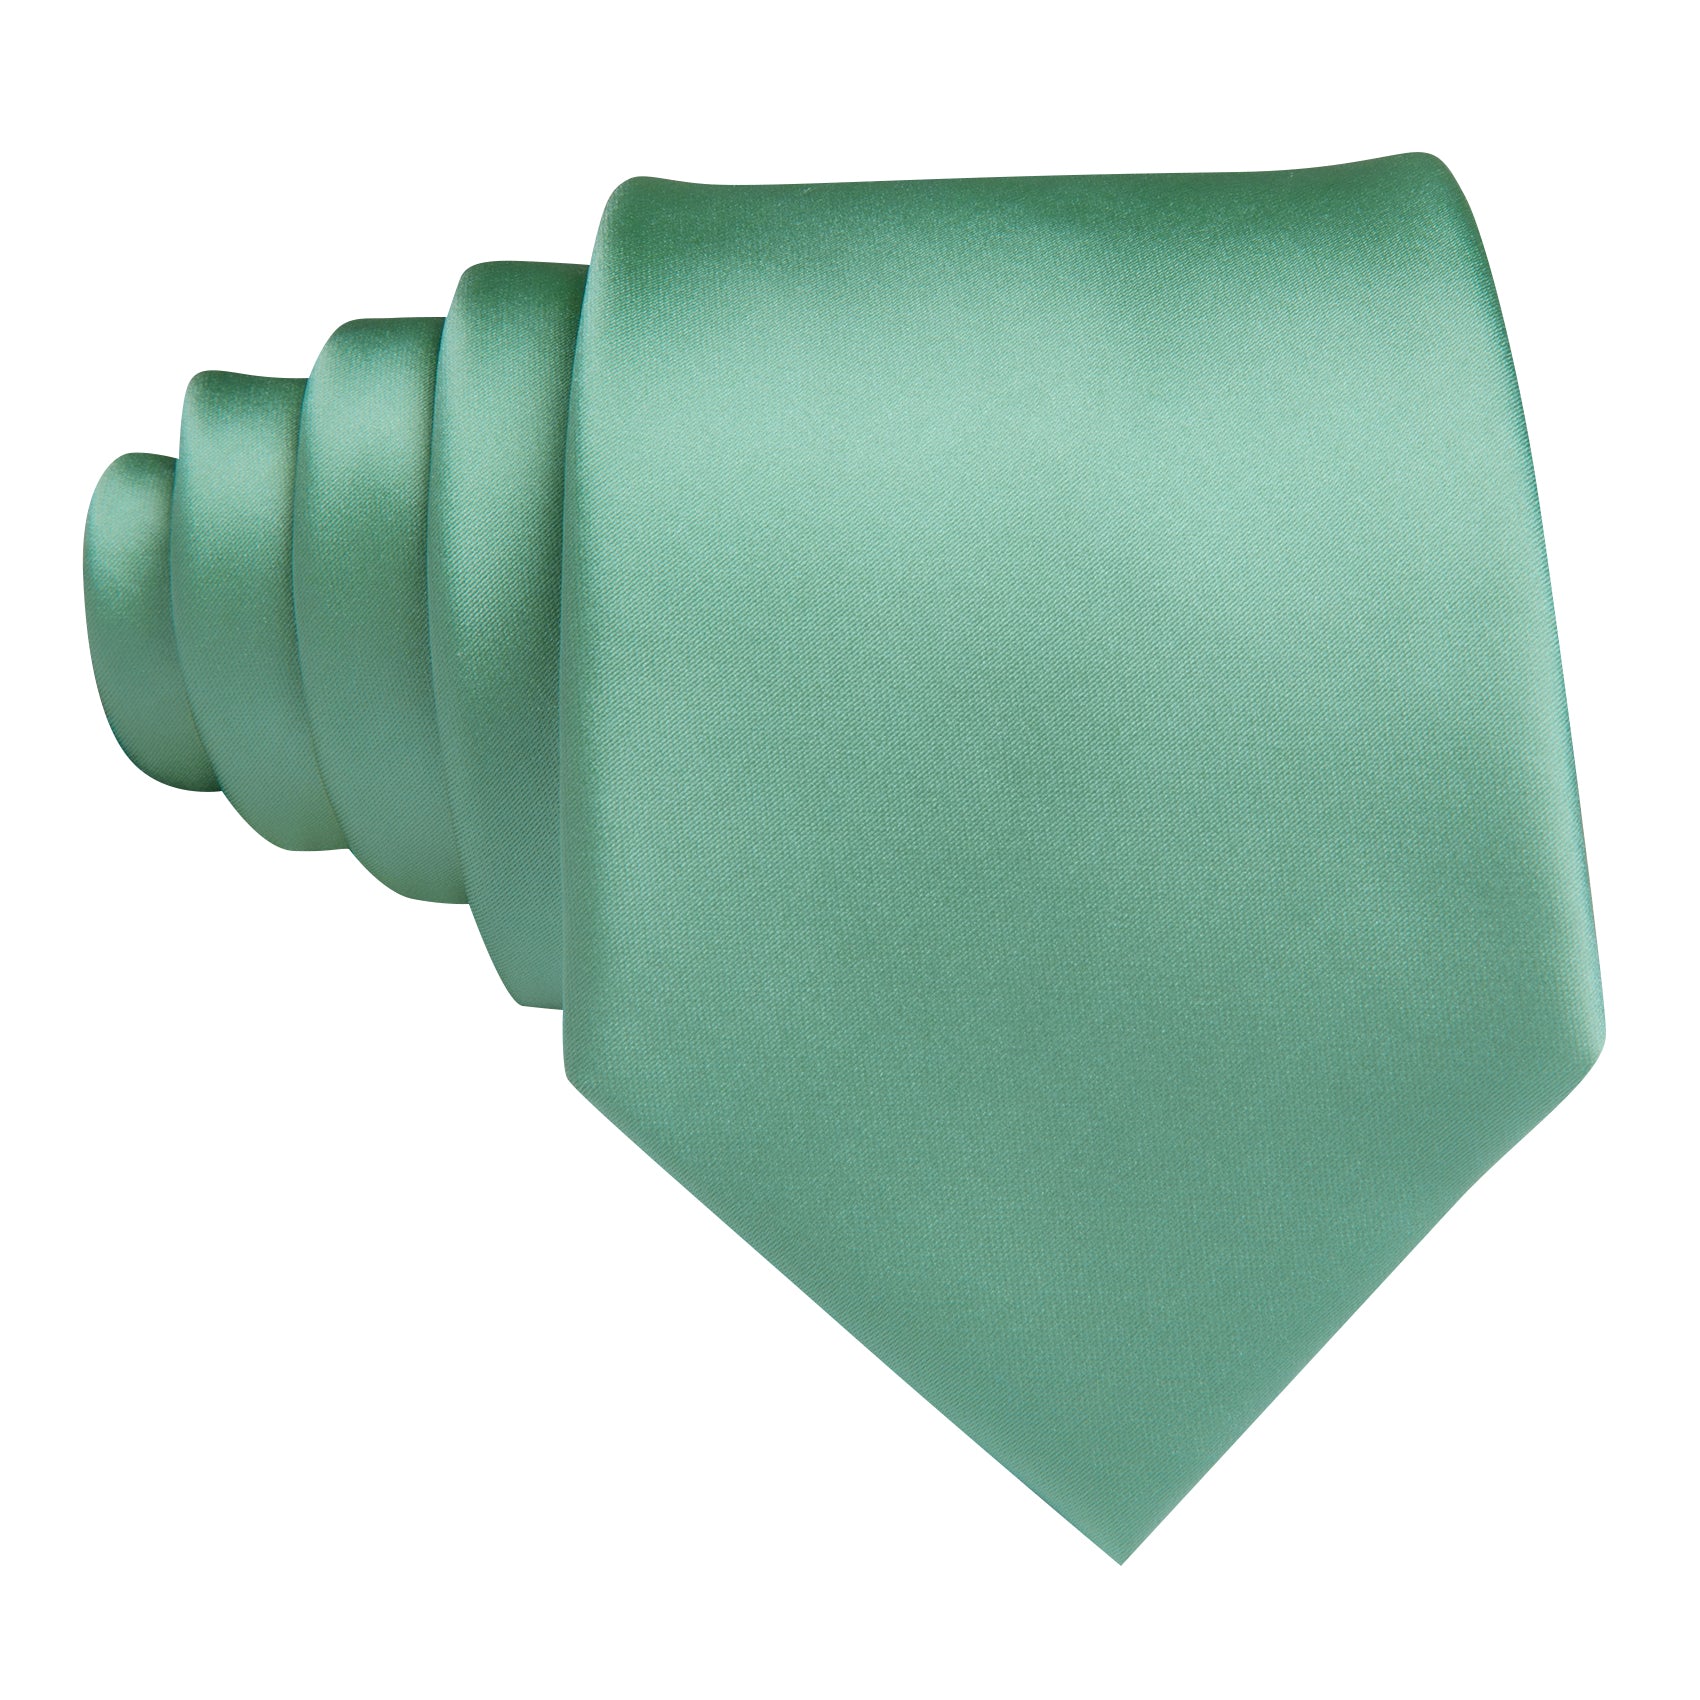 Barry.wang Men's Tie Turquoise Green Solid Silk Tie Handkerchief Cufflinks Set